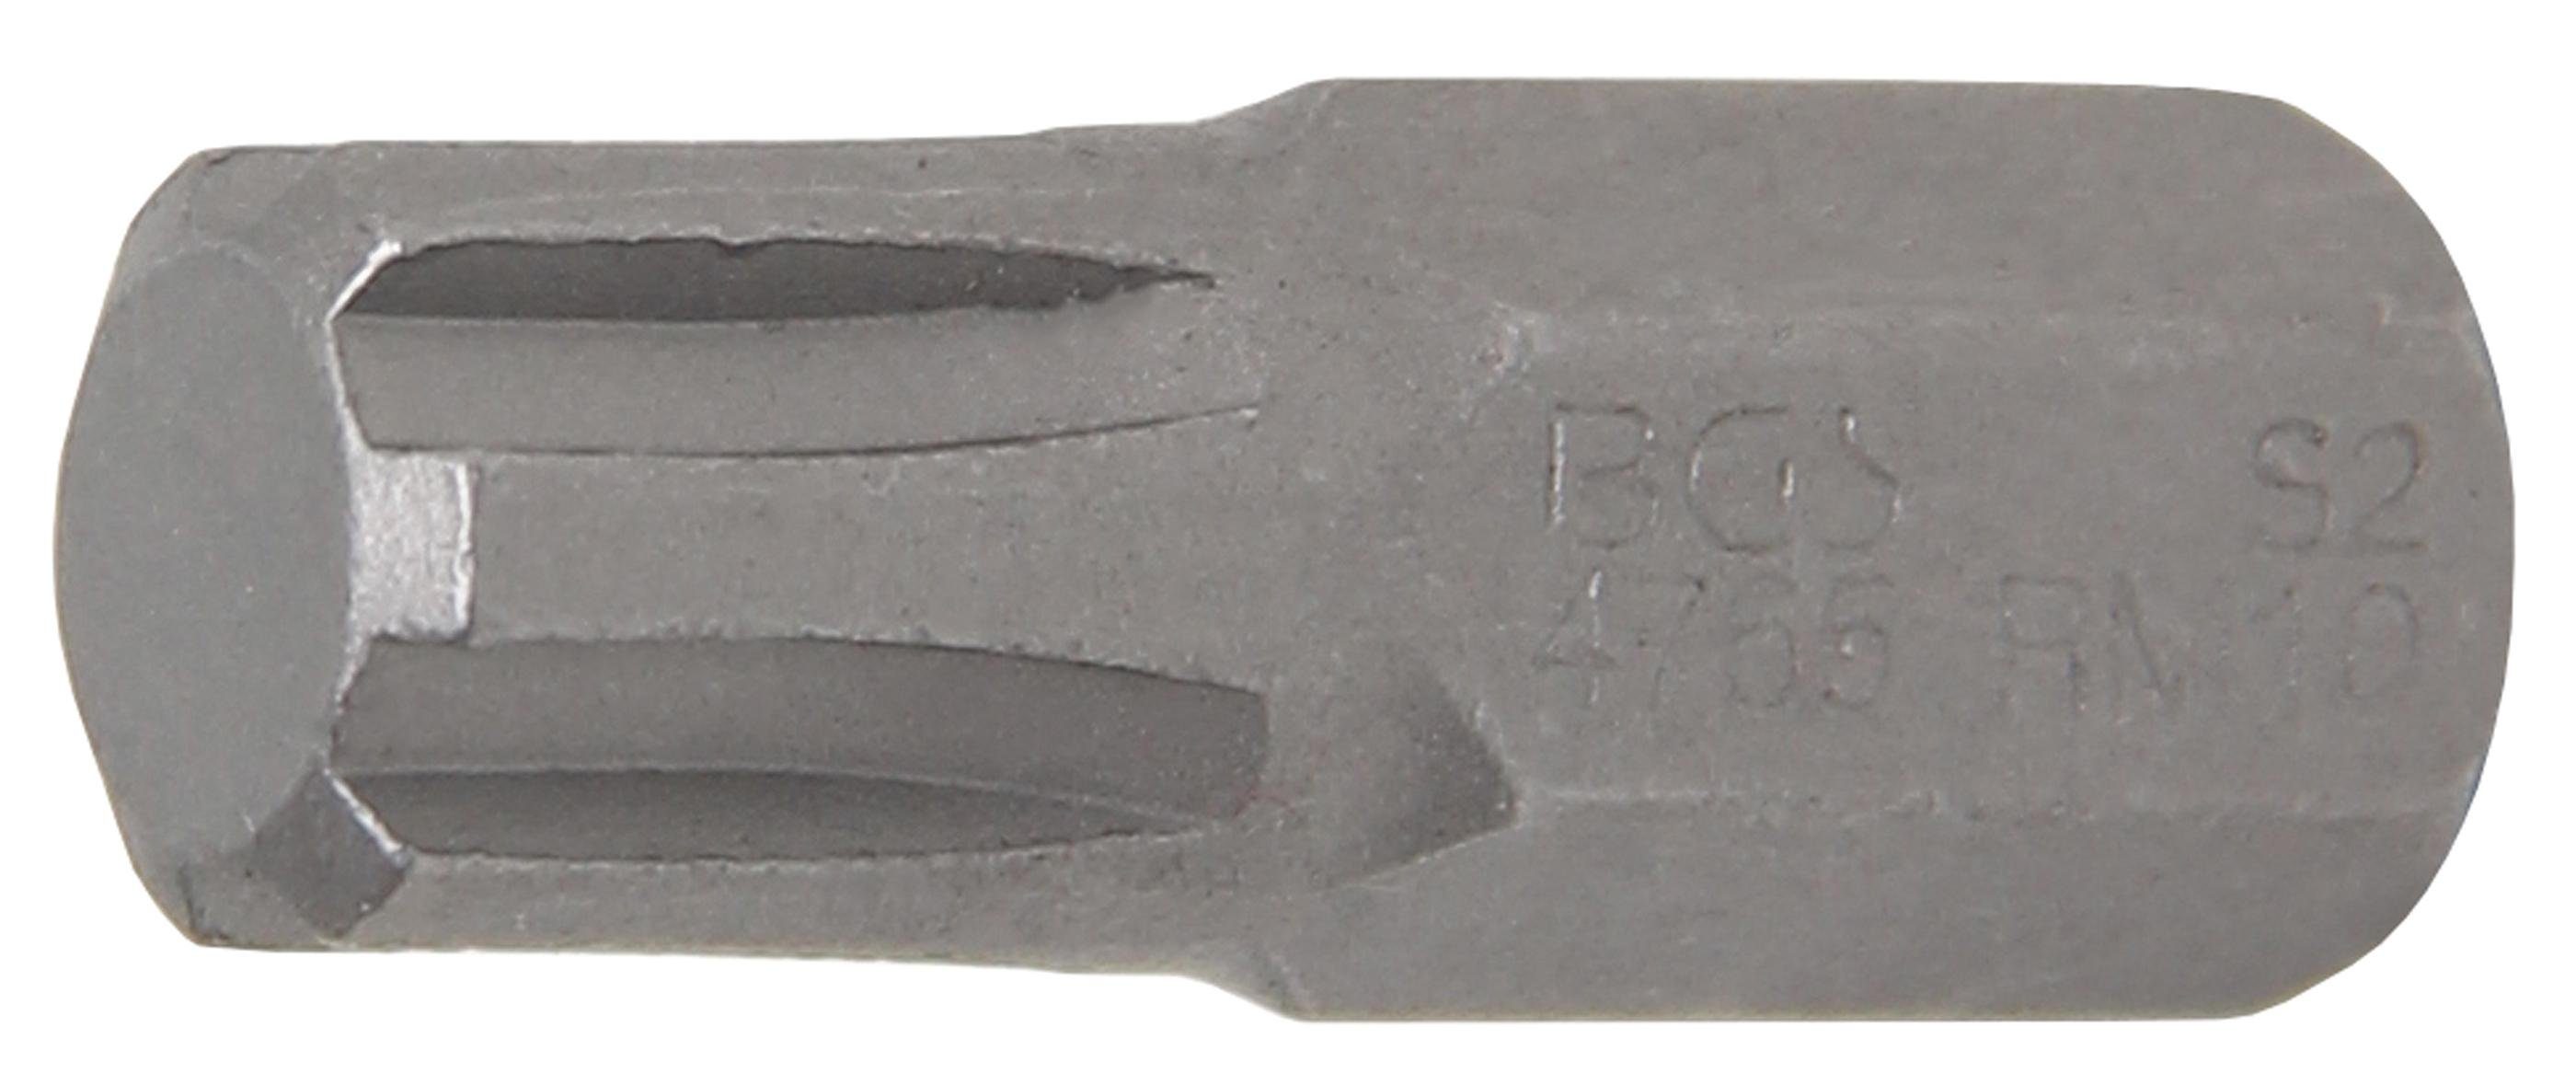 BGS technic Bit-Schraubendreher Bit, Antrieb Außensechskant 10 mm (3/8), Keil-Profil (für RIBE) M10